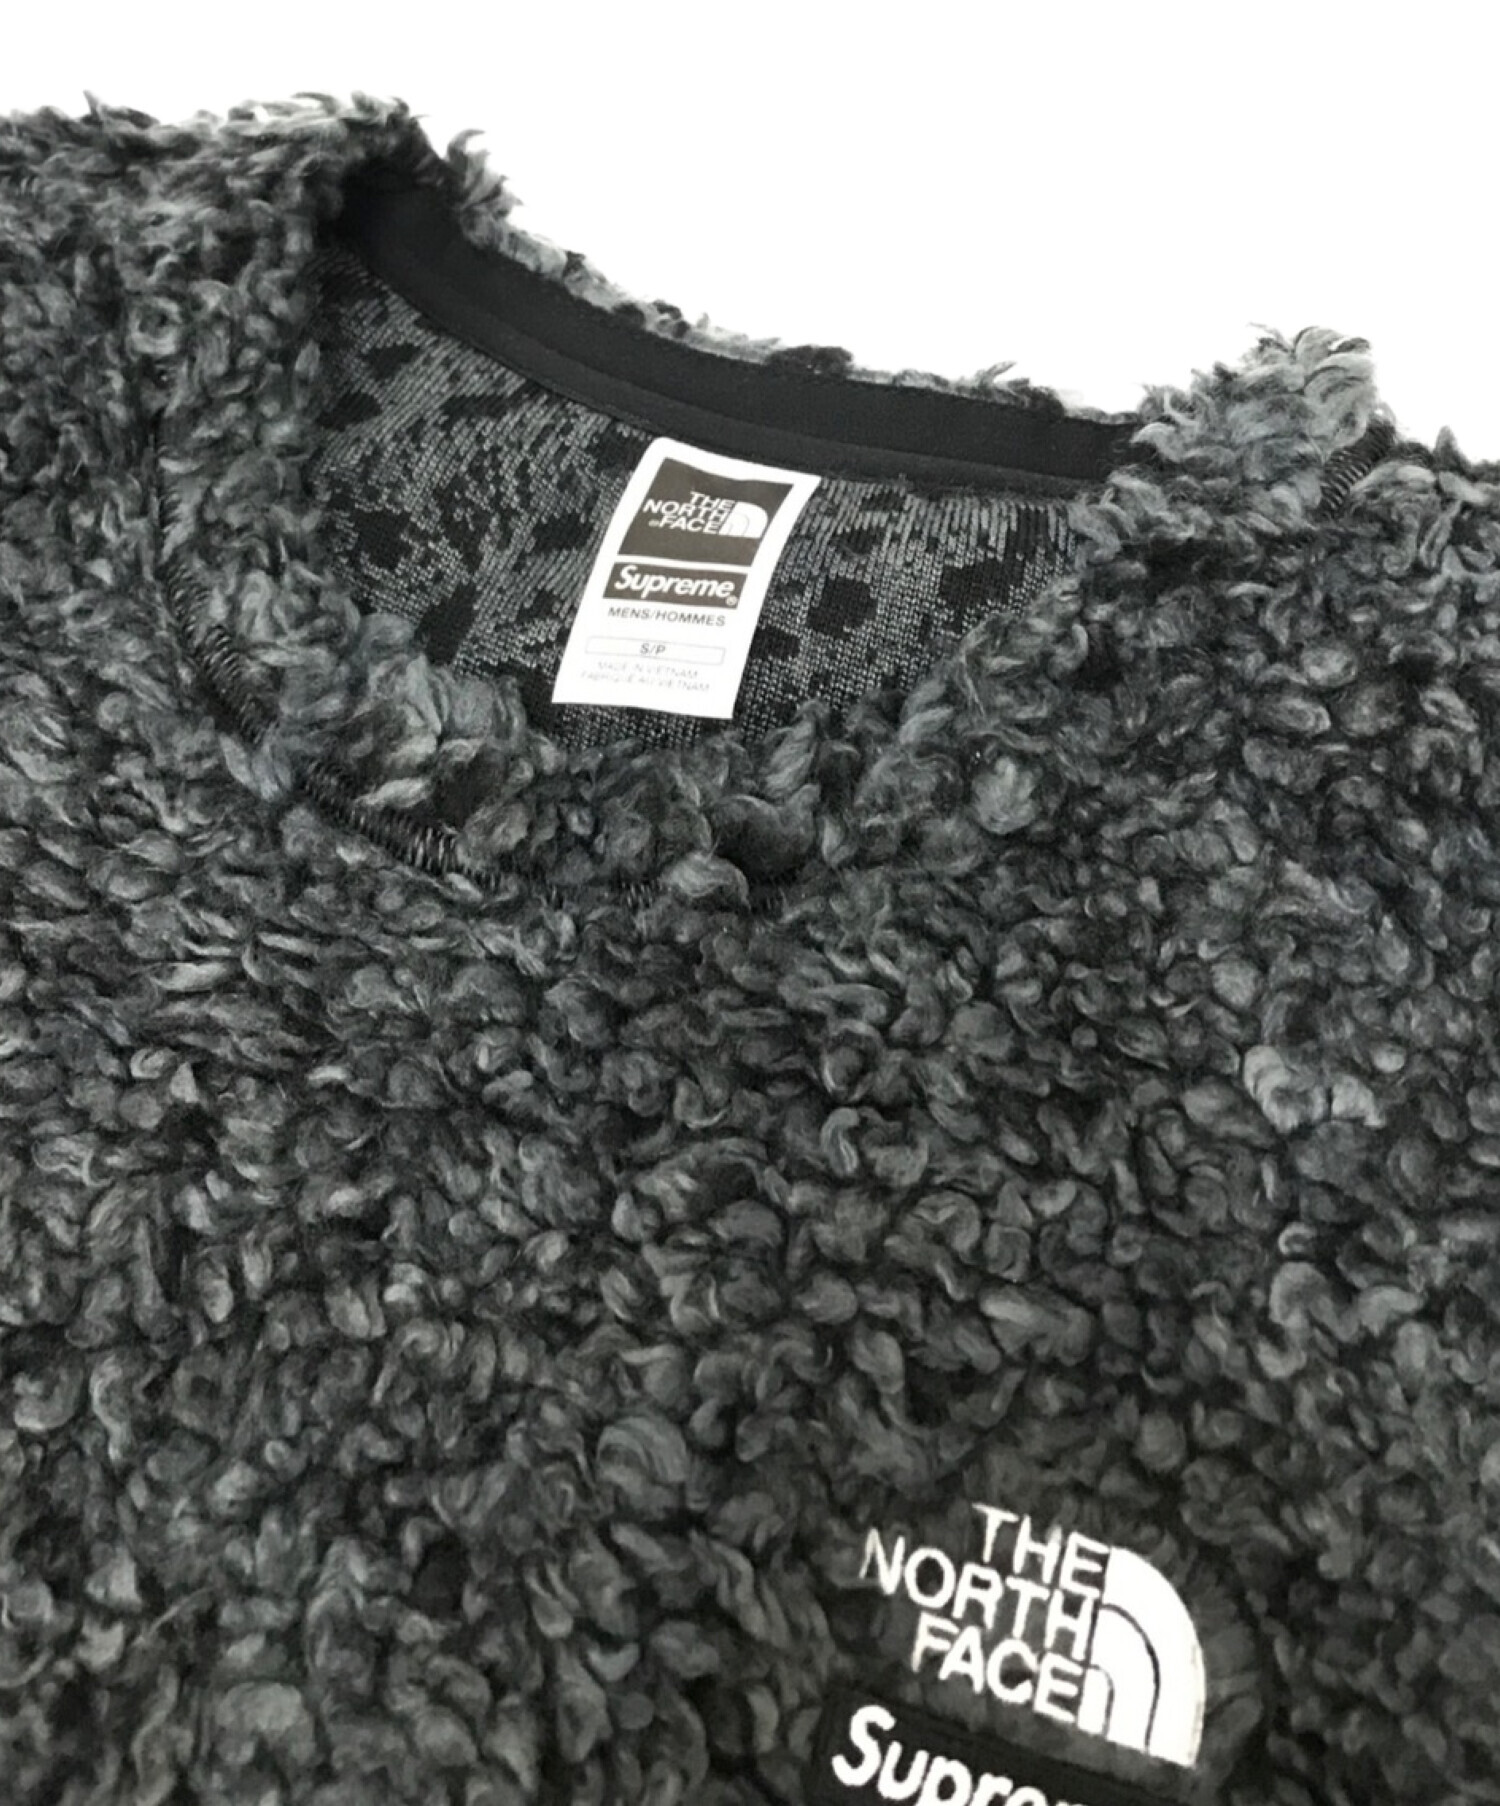 THE NORTH FACE (ザ ノース フェイス) SUPREME (シュプリーム) High Pile Fleece ブラック サイズ:S  未使用品